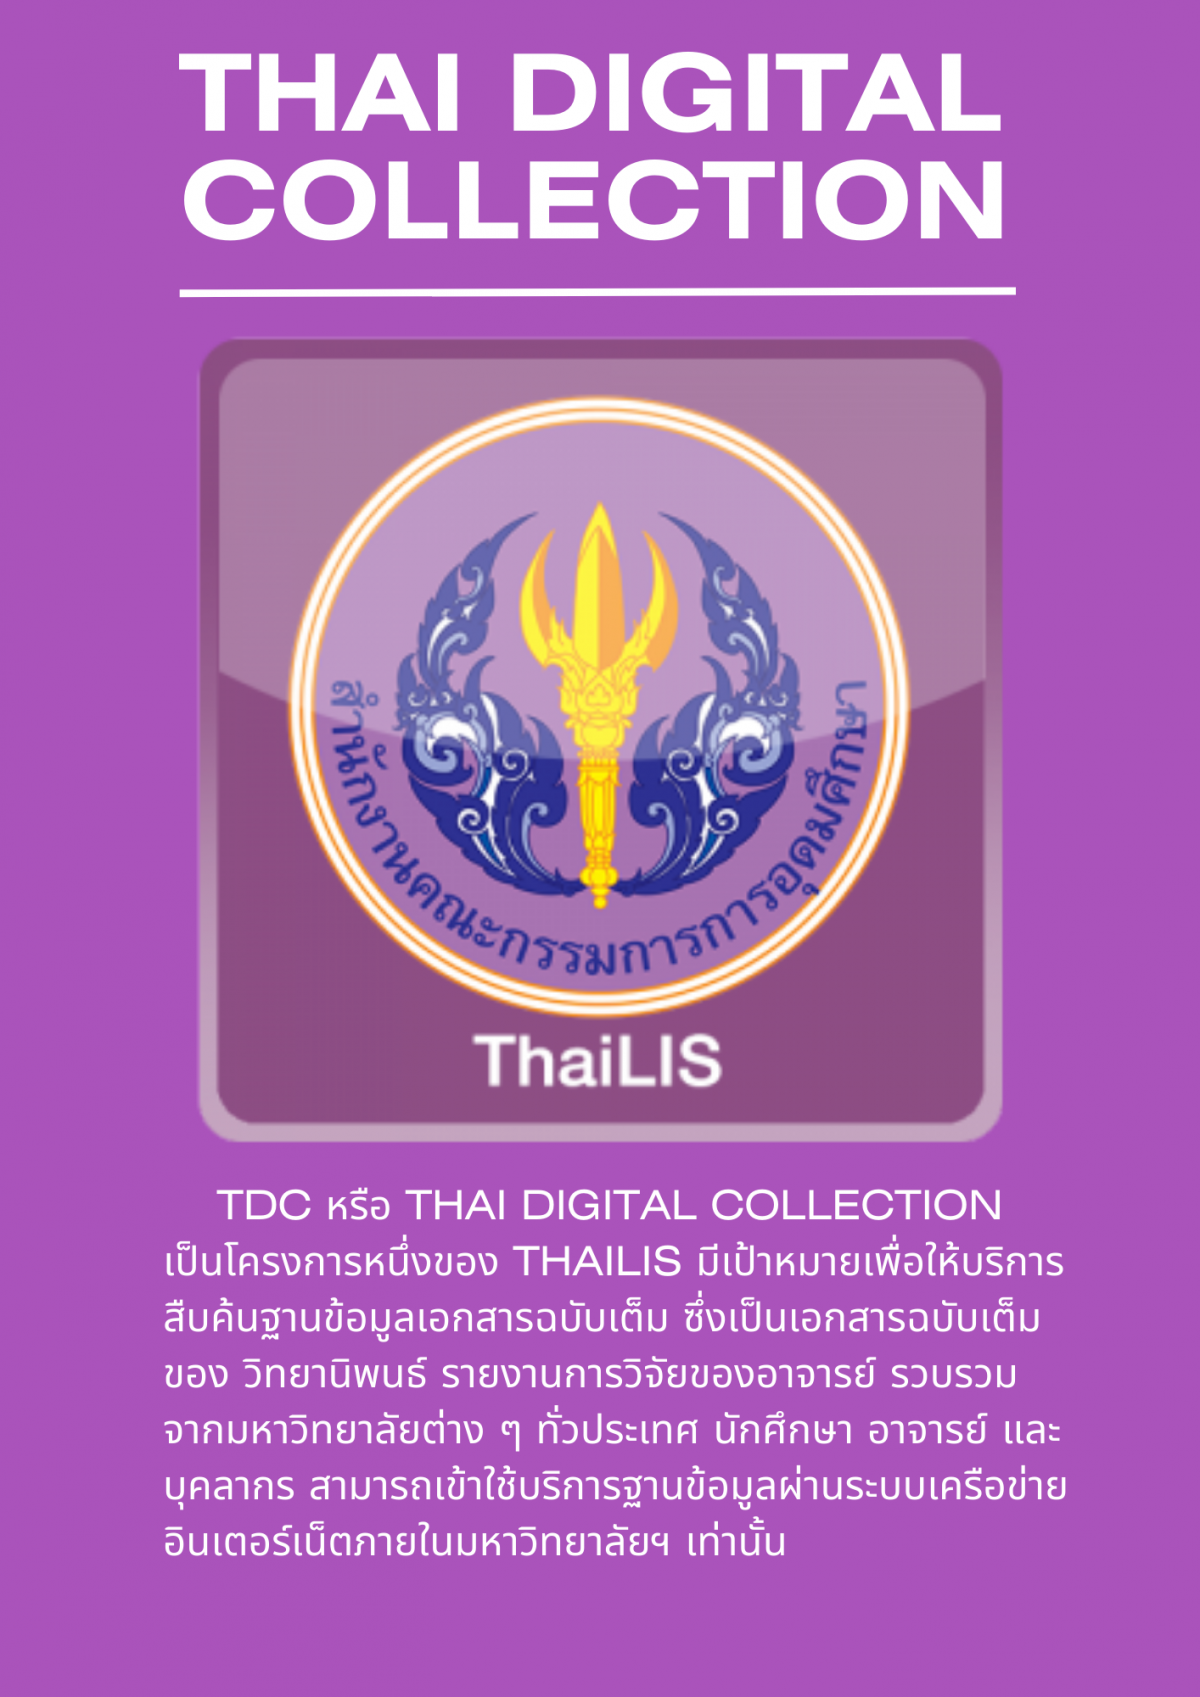 แนะนำฐานข้อมูล TDC หรือ Thai Digital Collection